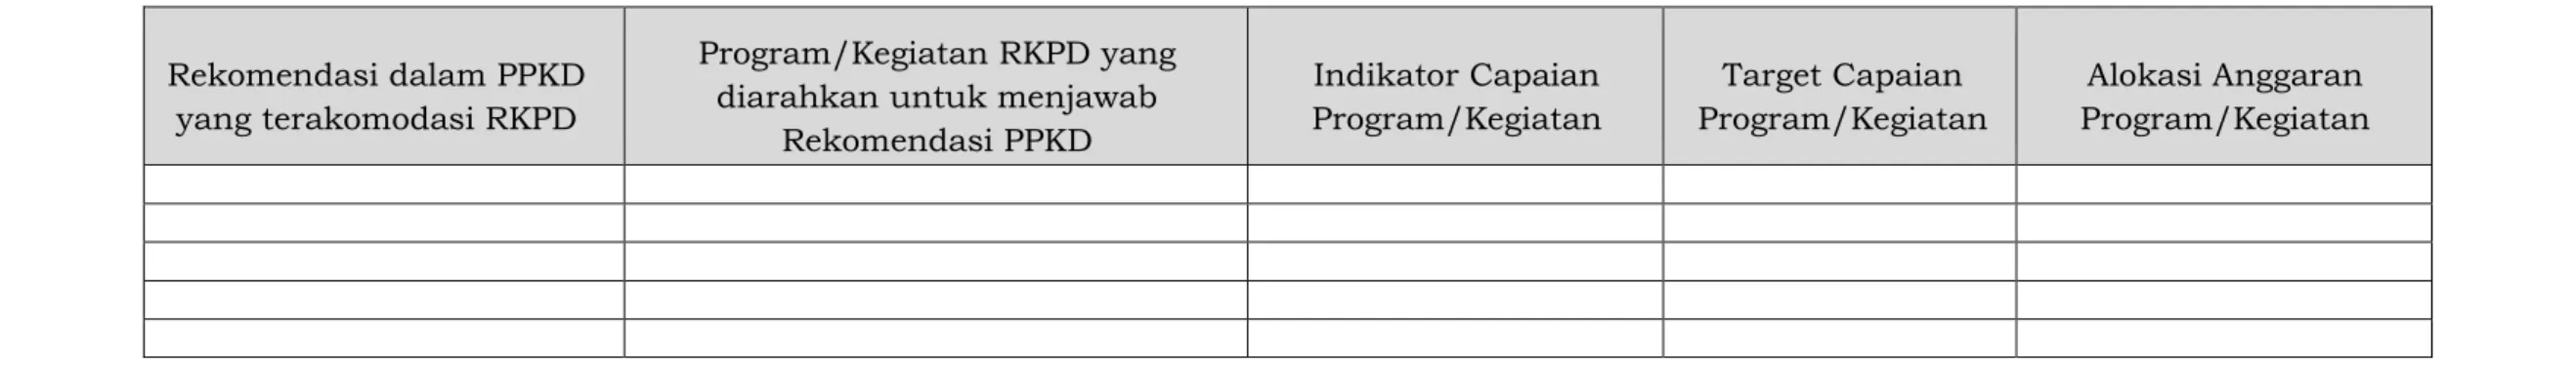 Tabel B.2 Pemetaan Rekomendasi PPKD terhadap RKPD Kabupaten/Kota 